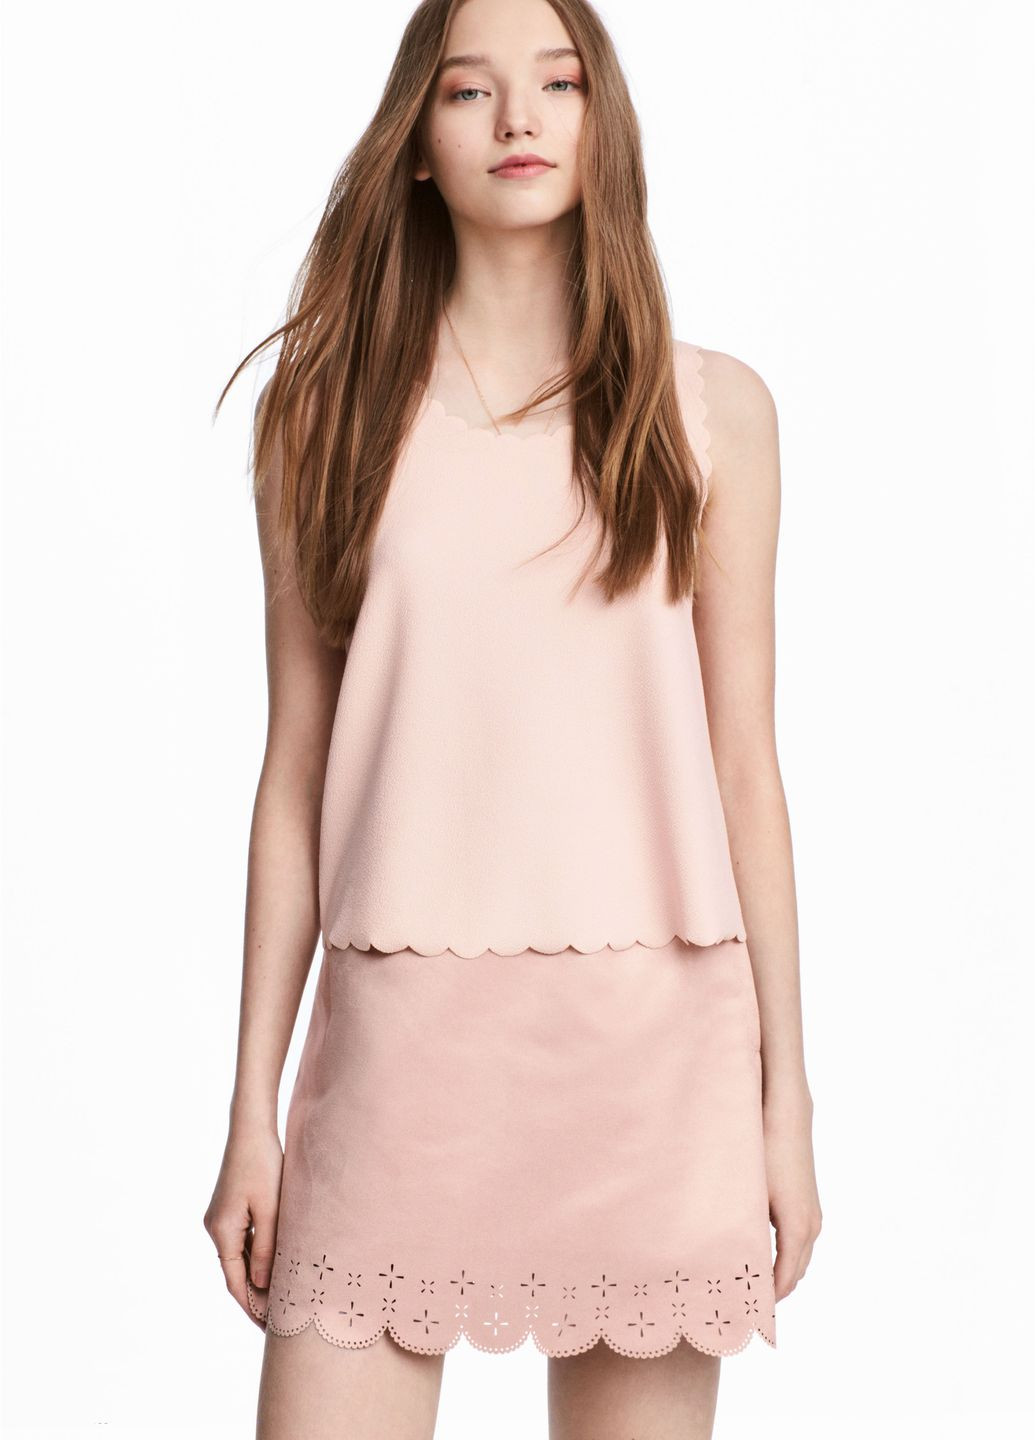 Светло-розовая юбка H&M